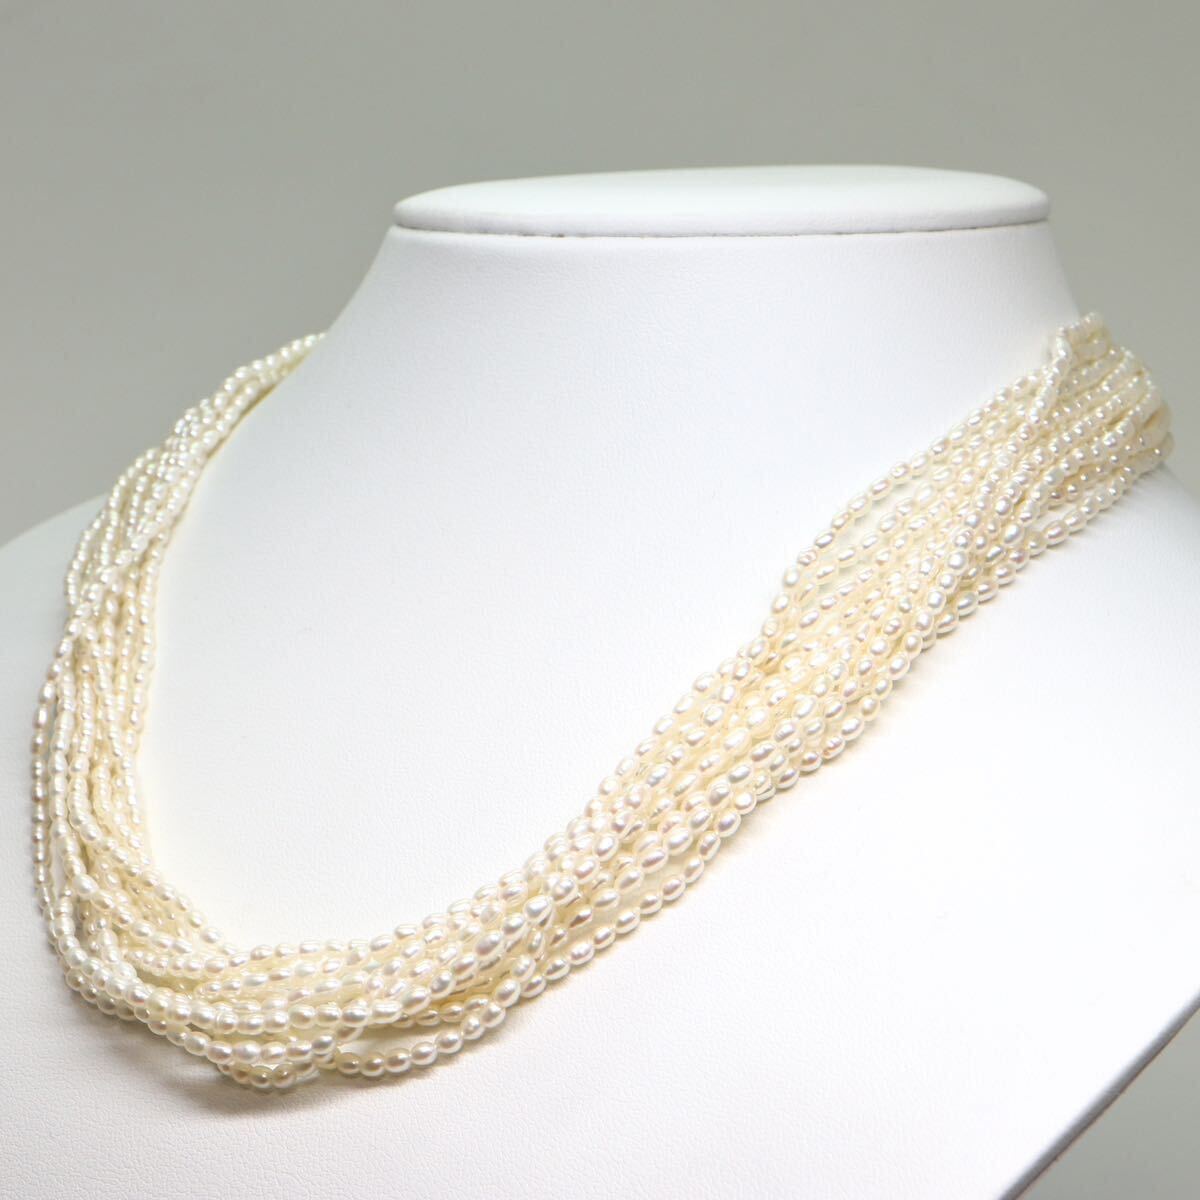 《アコヤ本真珠3連ネックレス》A 約37.6g 約44cm pearl necklace ケシパール ジュエリー jewelry CC0/CC0の画像3